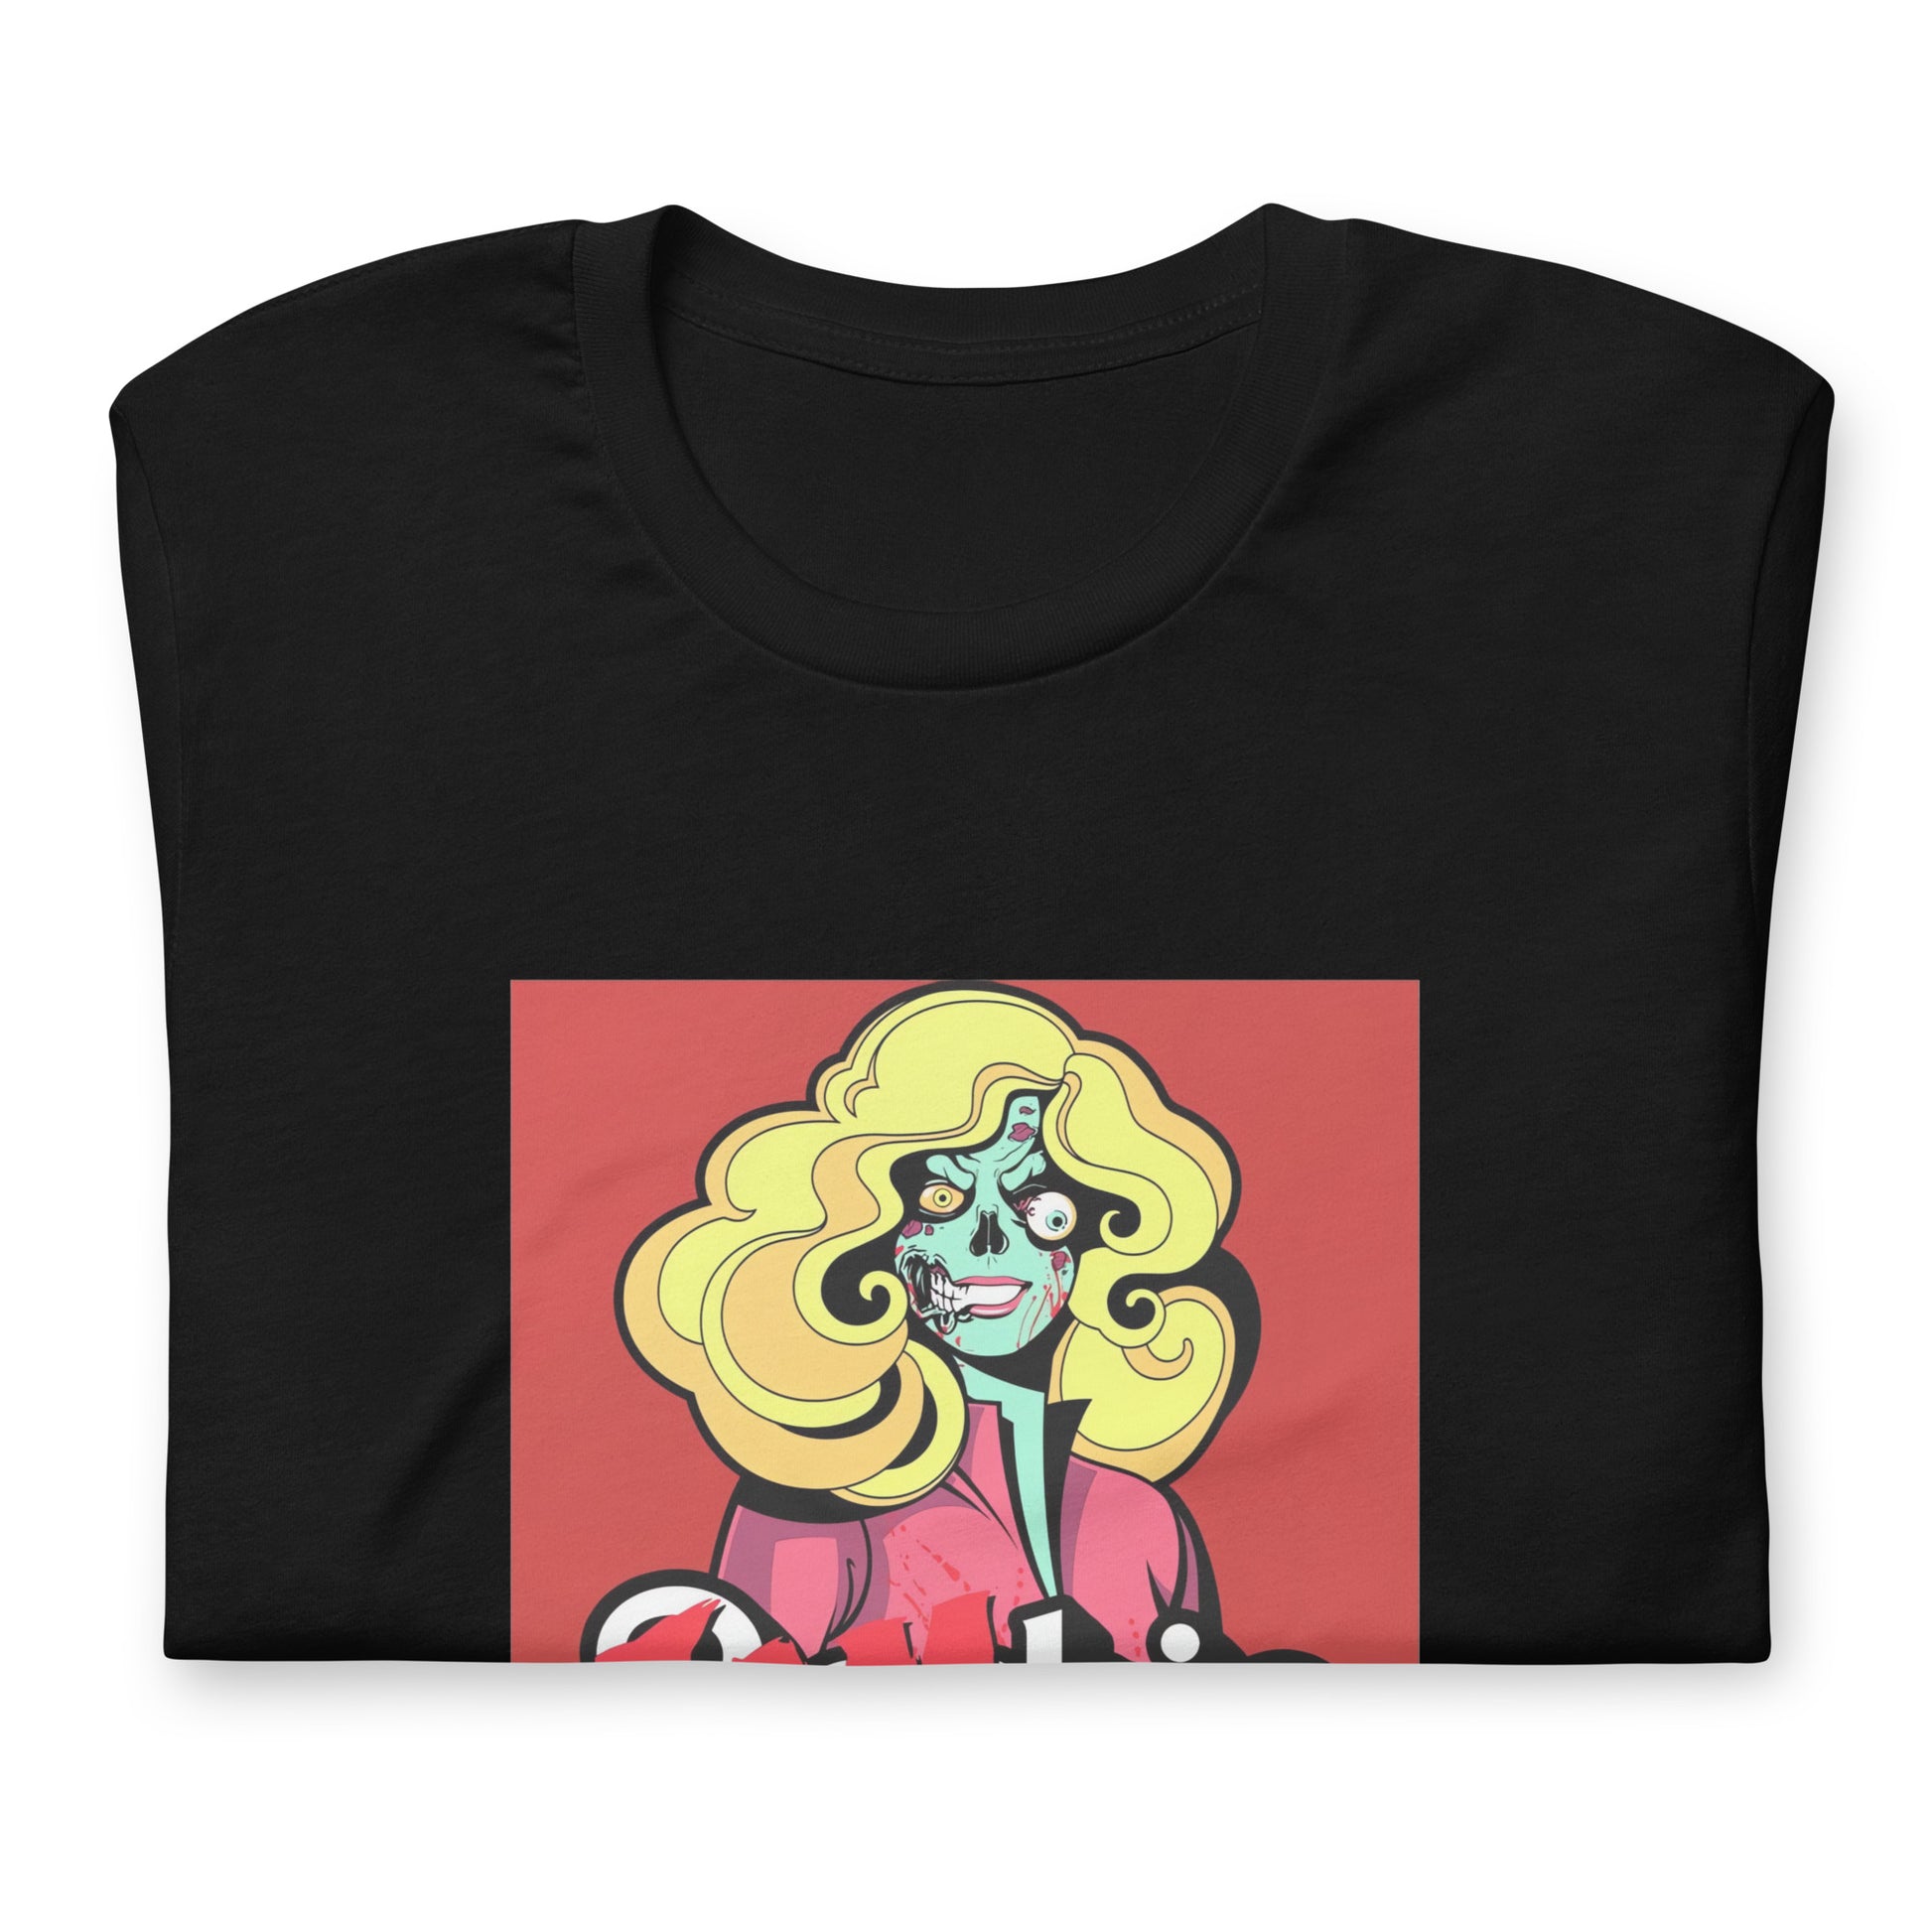 ¡Compra el mejor merchandising en Superstar! Encuentra diseños únicos y de alta calidad en playeras, Playera Barb-Zombie